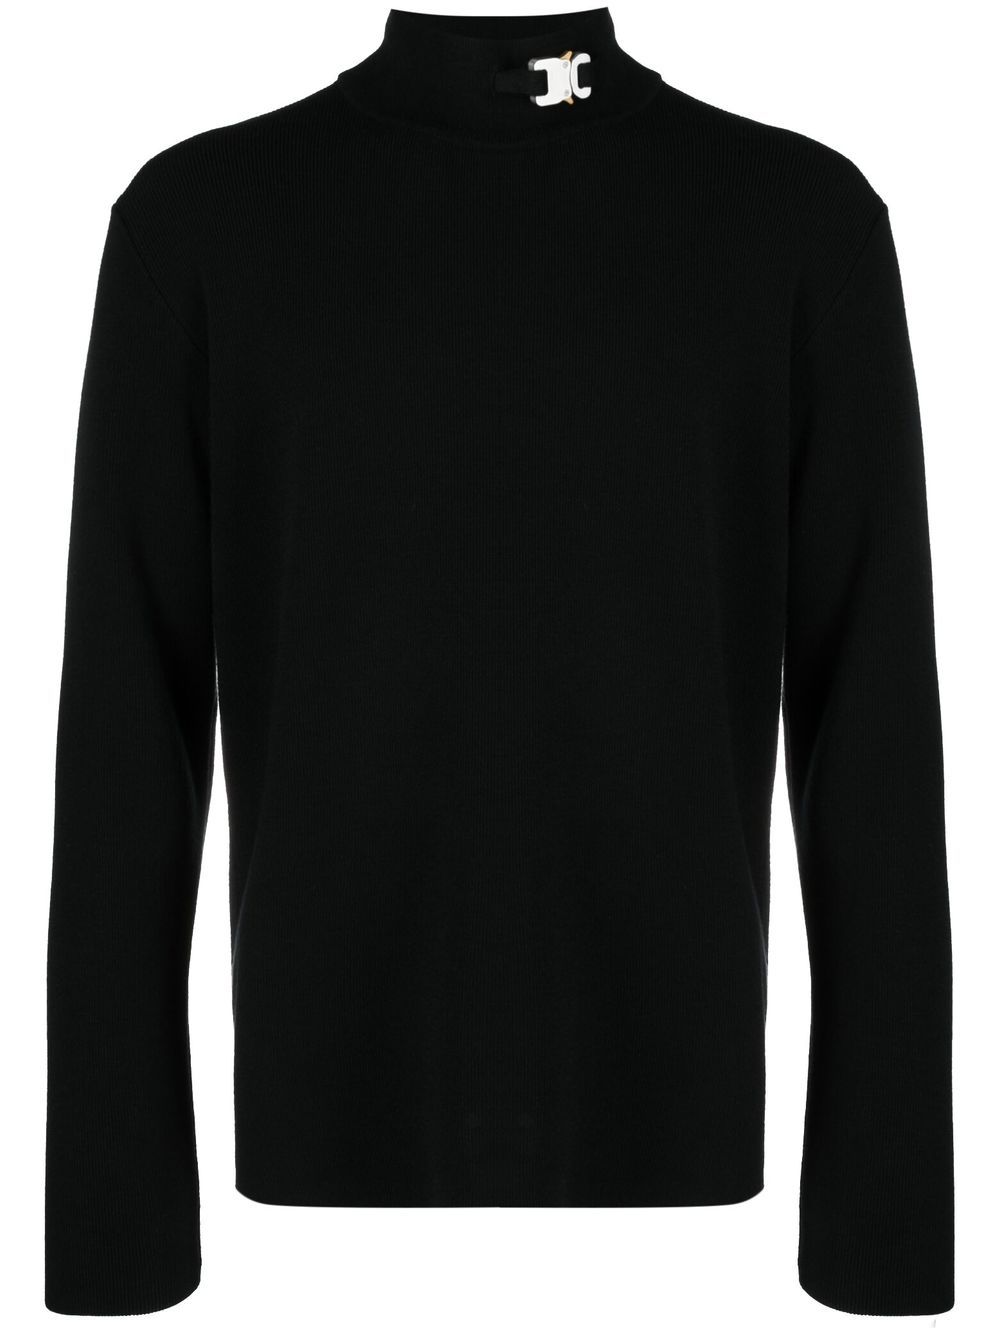 1017 ALYX 9SM bucke-detail knitted jumper - Black von 1017 ALYX 9SM